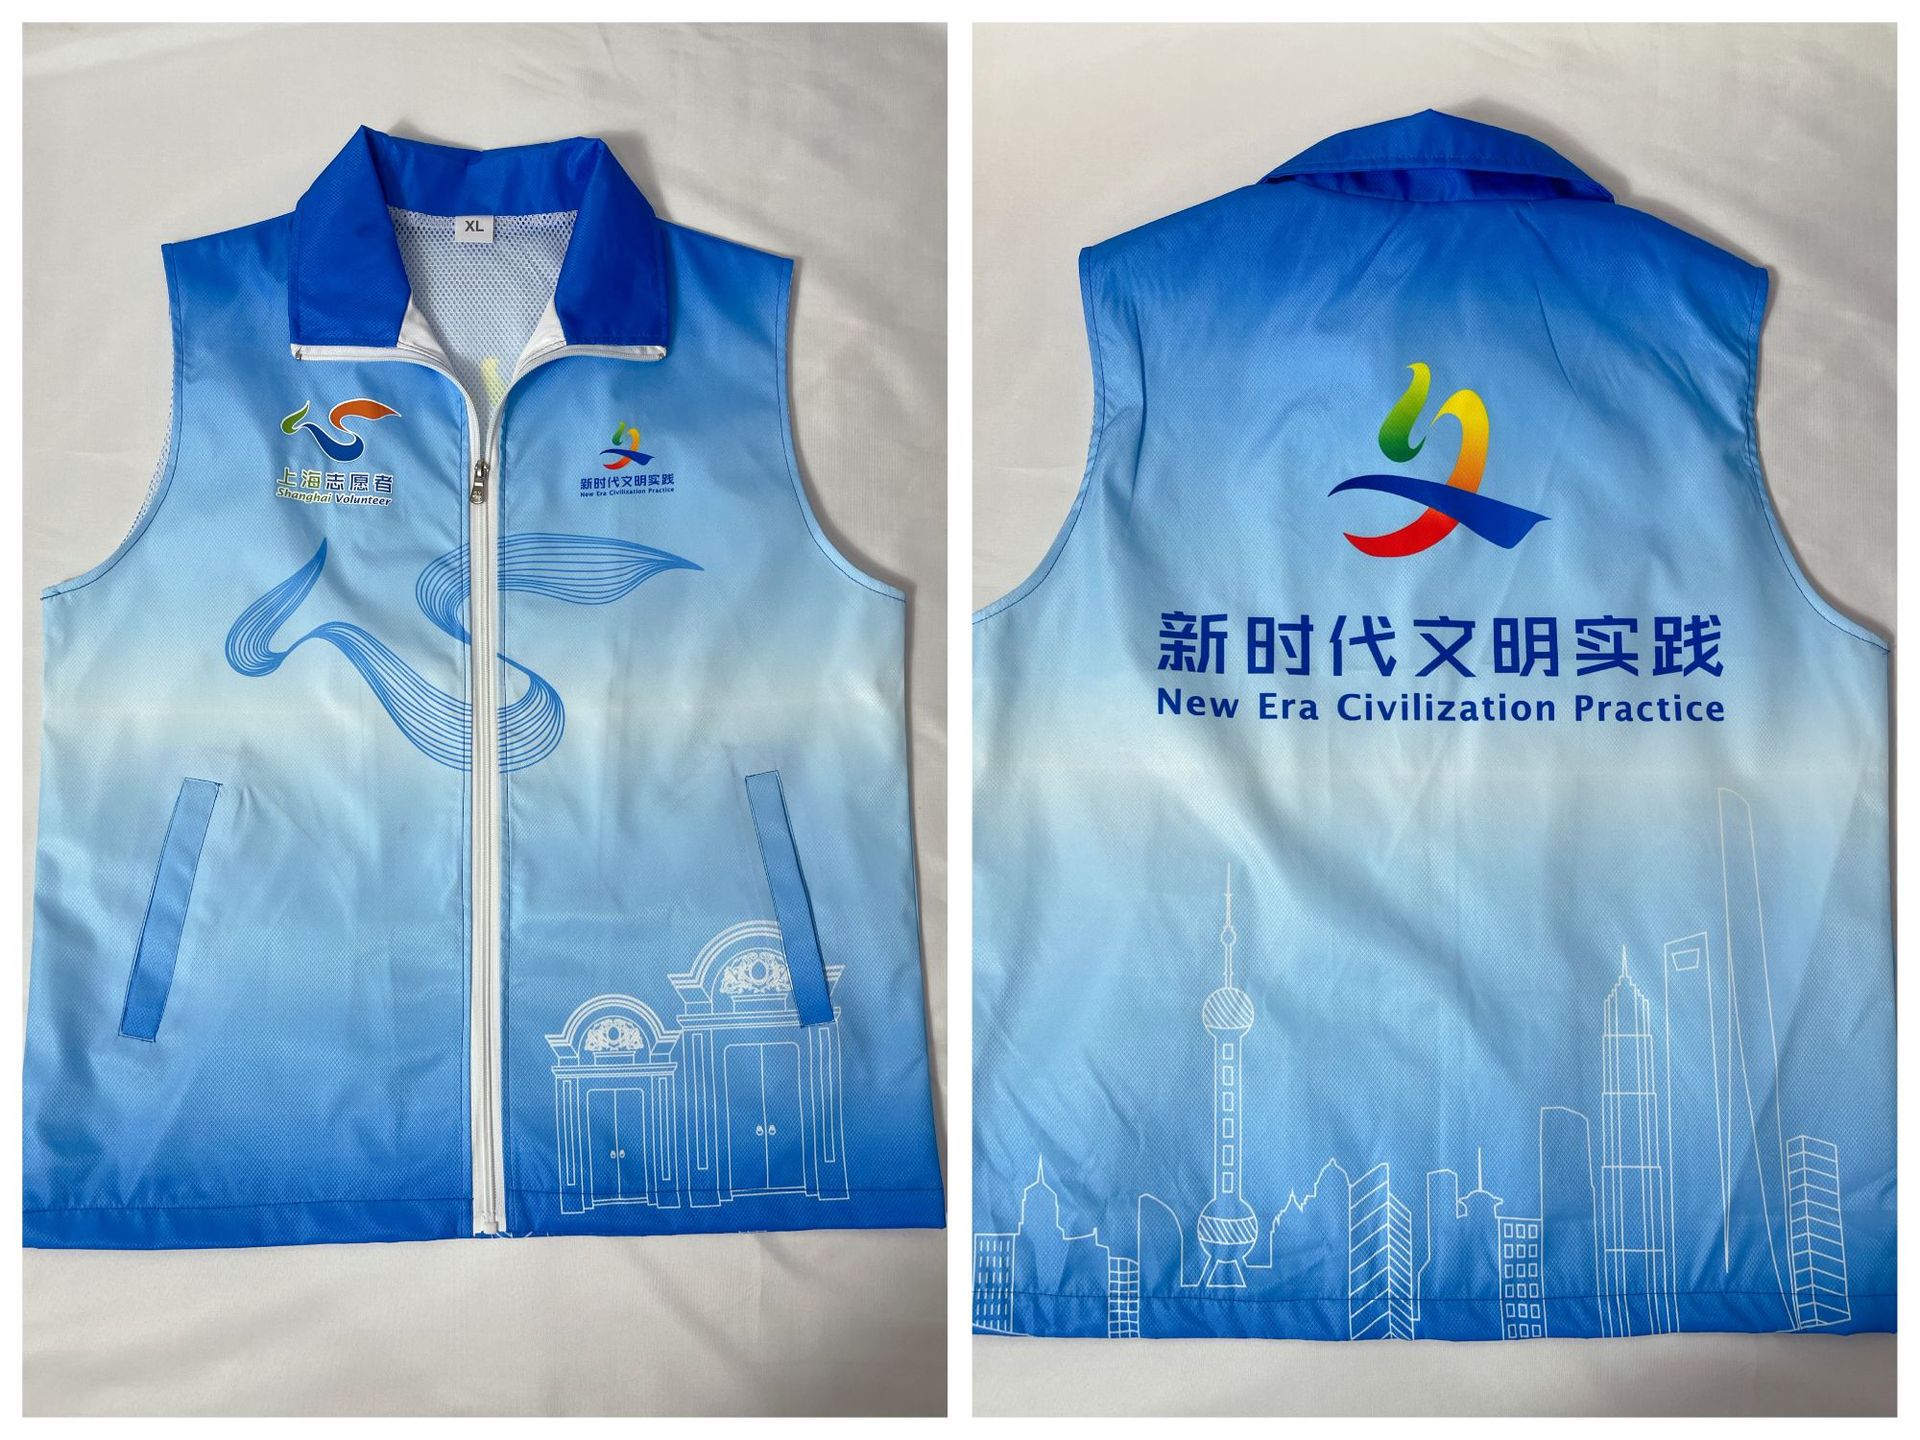 In Stock Gradient Color Volunteer Vest Advertising Waistcoat Vest Work Clothes Full Body Printed Shanghai Volunteer Public Welfare Activities